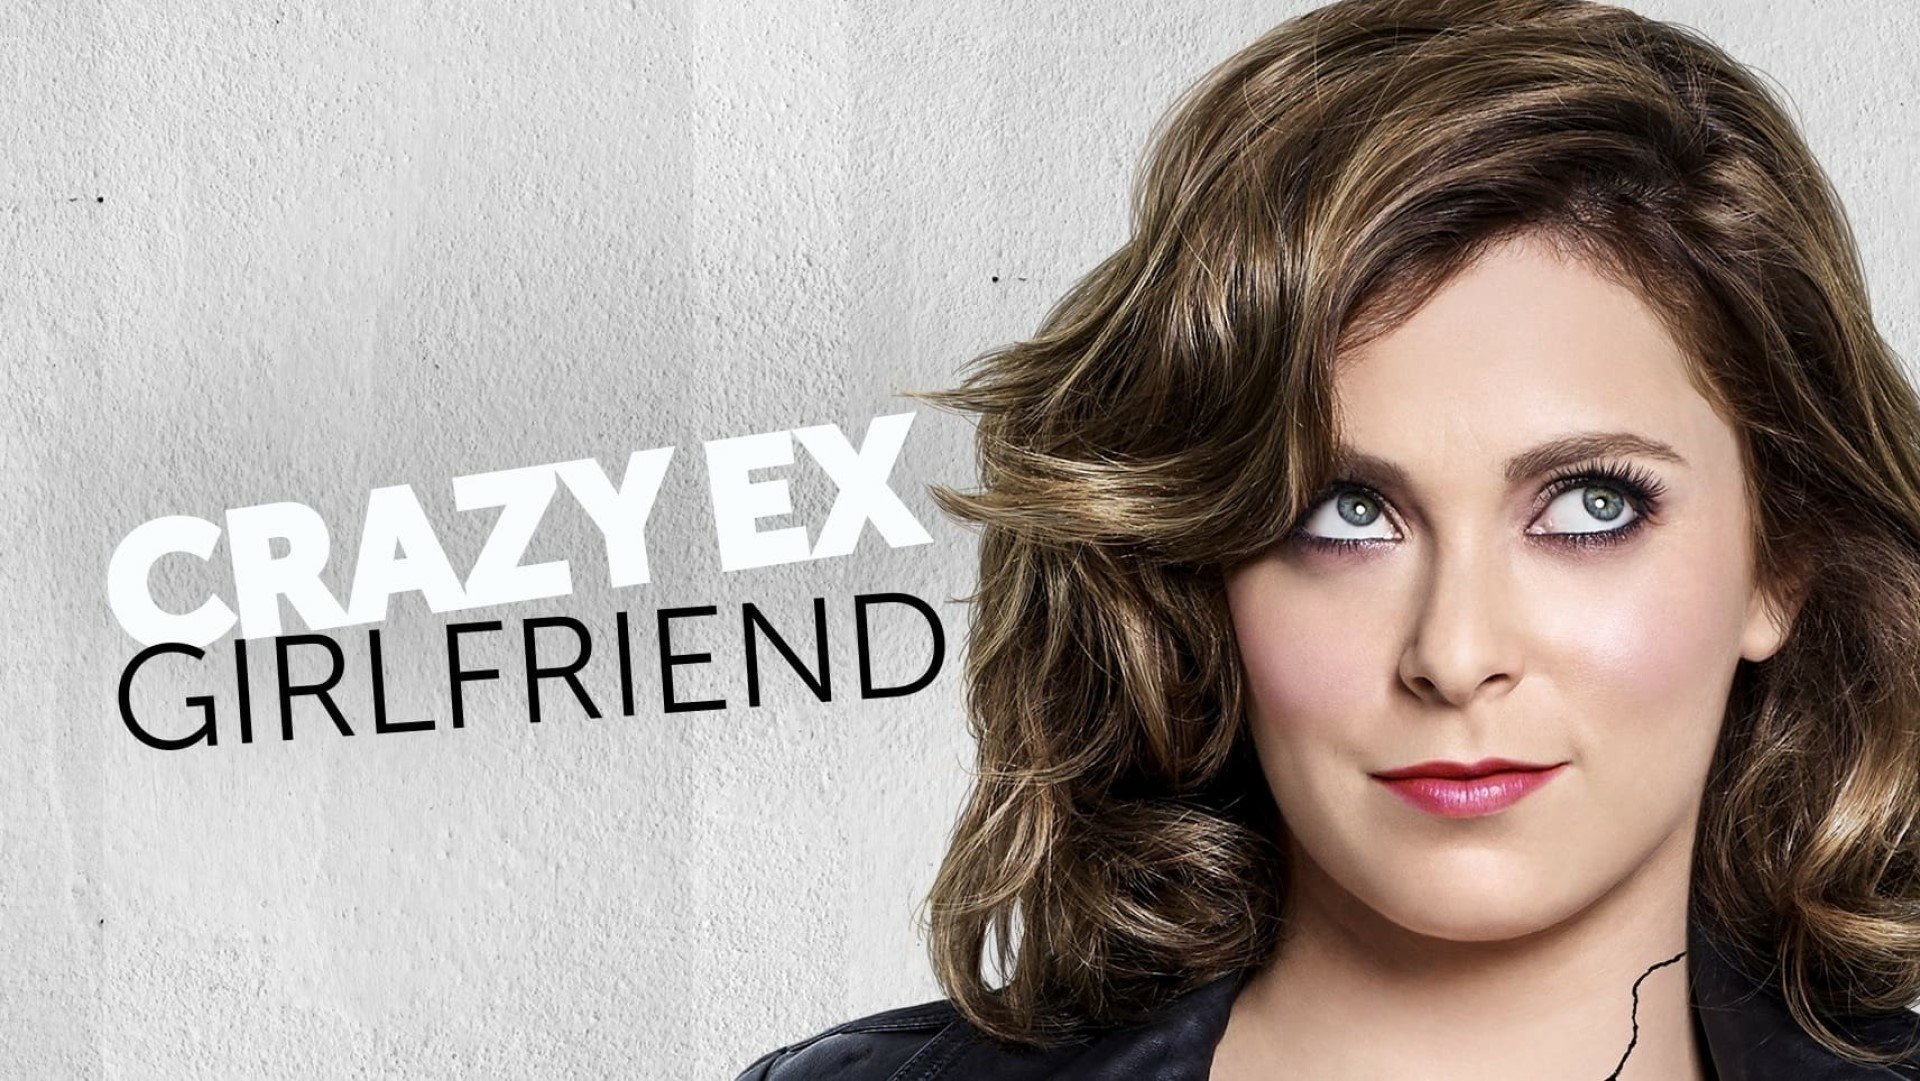 Tv Show Crazy Ex Girlfriend Hd Wallpaper